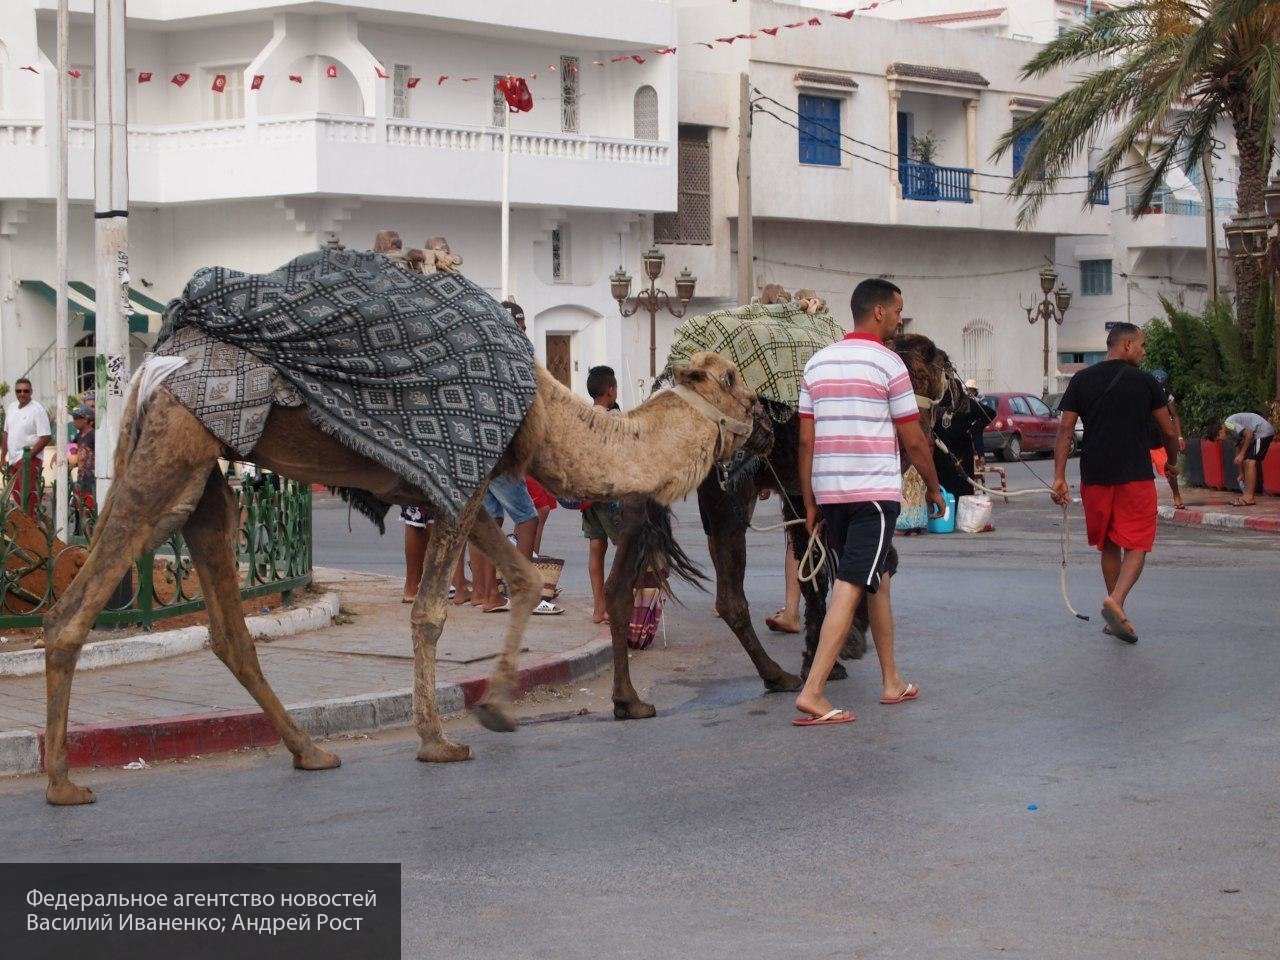 «Угроза революции и войн»: эксперт о последствиях высокой безграмотности населения Туниса